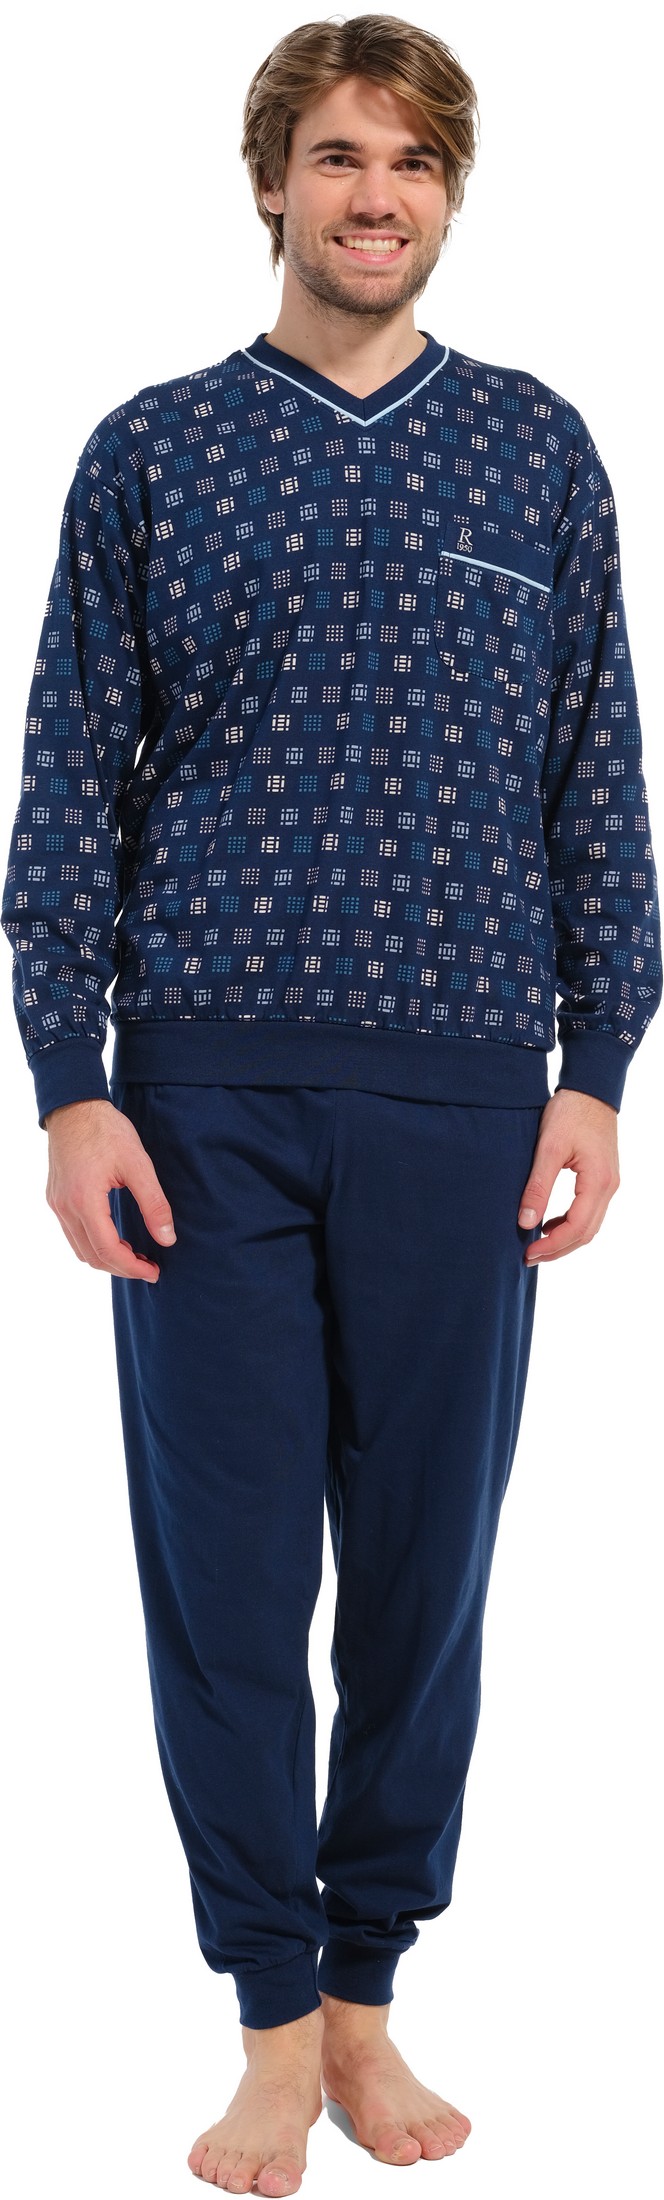 Robson tricot heren pyjama 27232-716-2 - Blauw - S/48